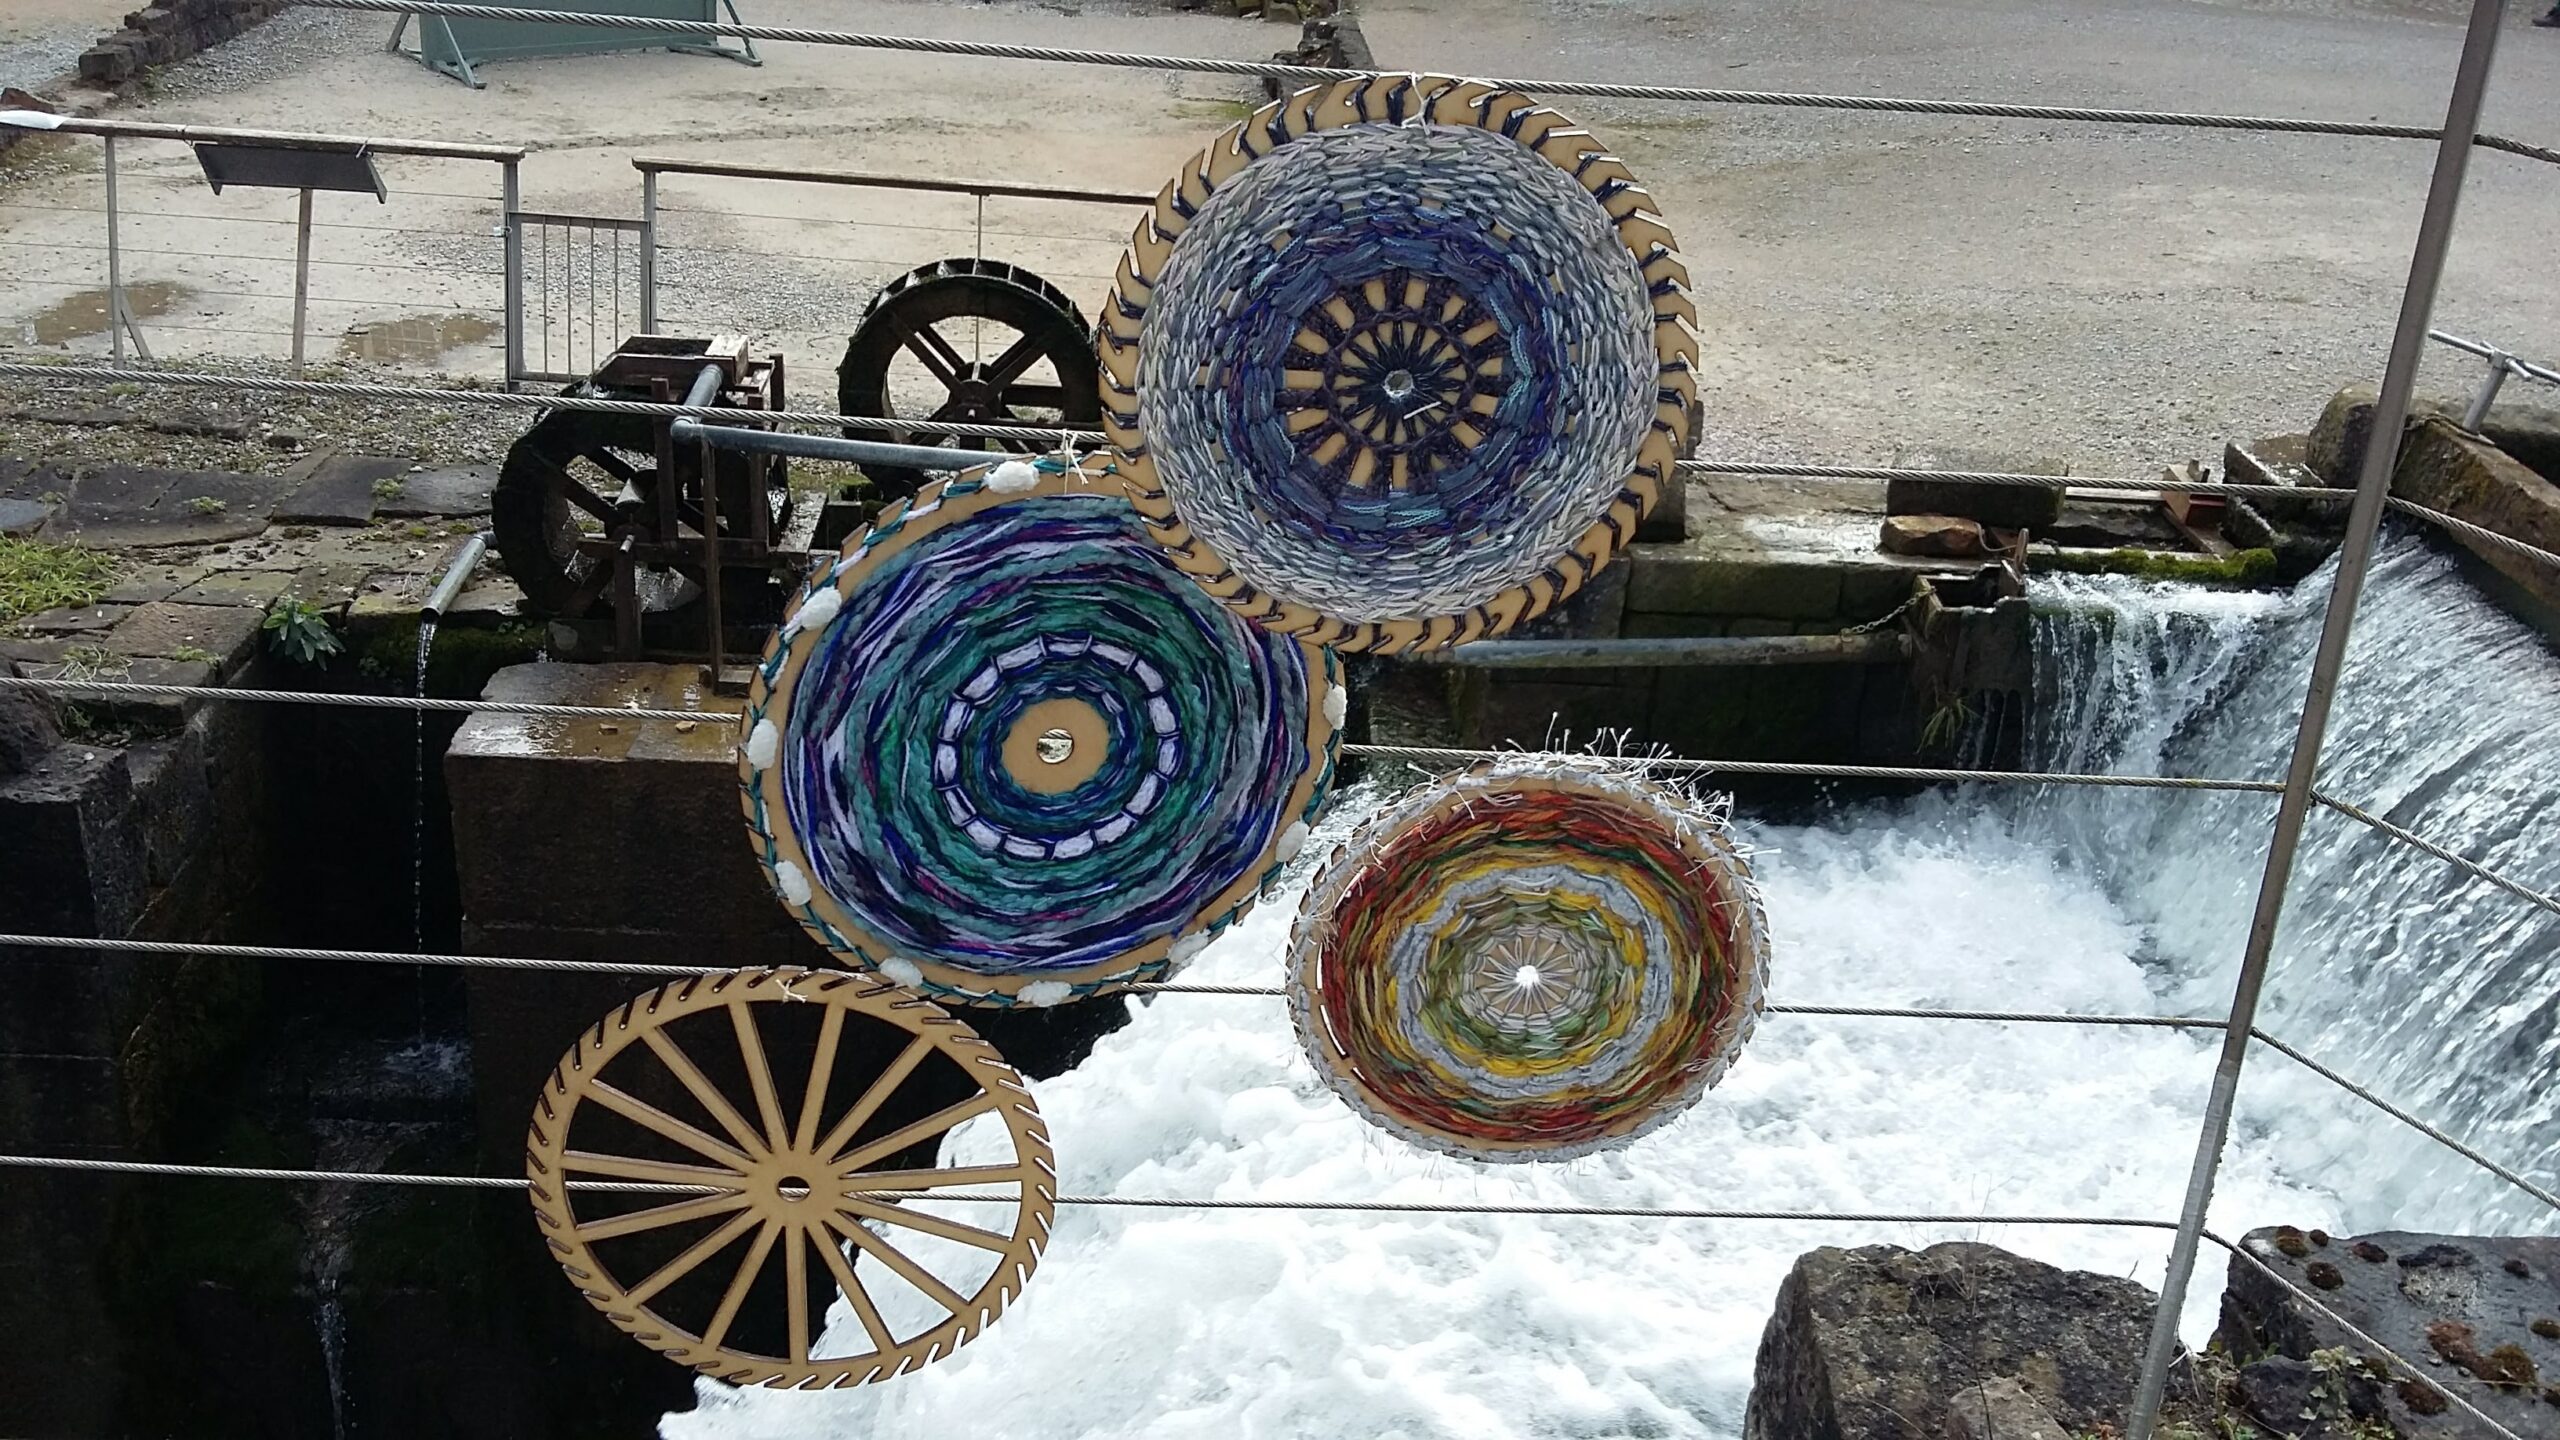 Waterwheel weaving